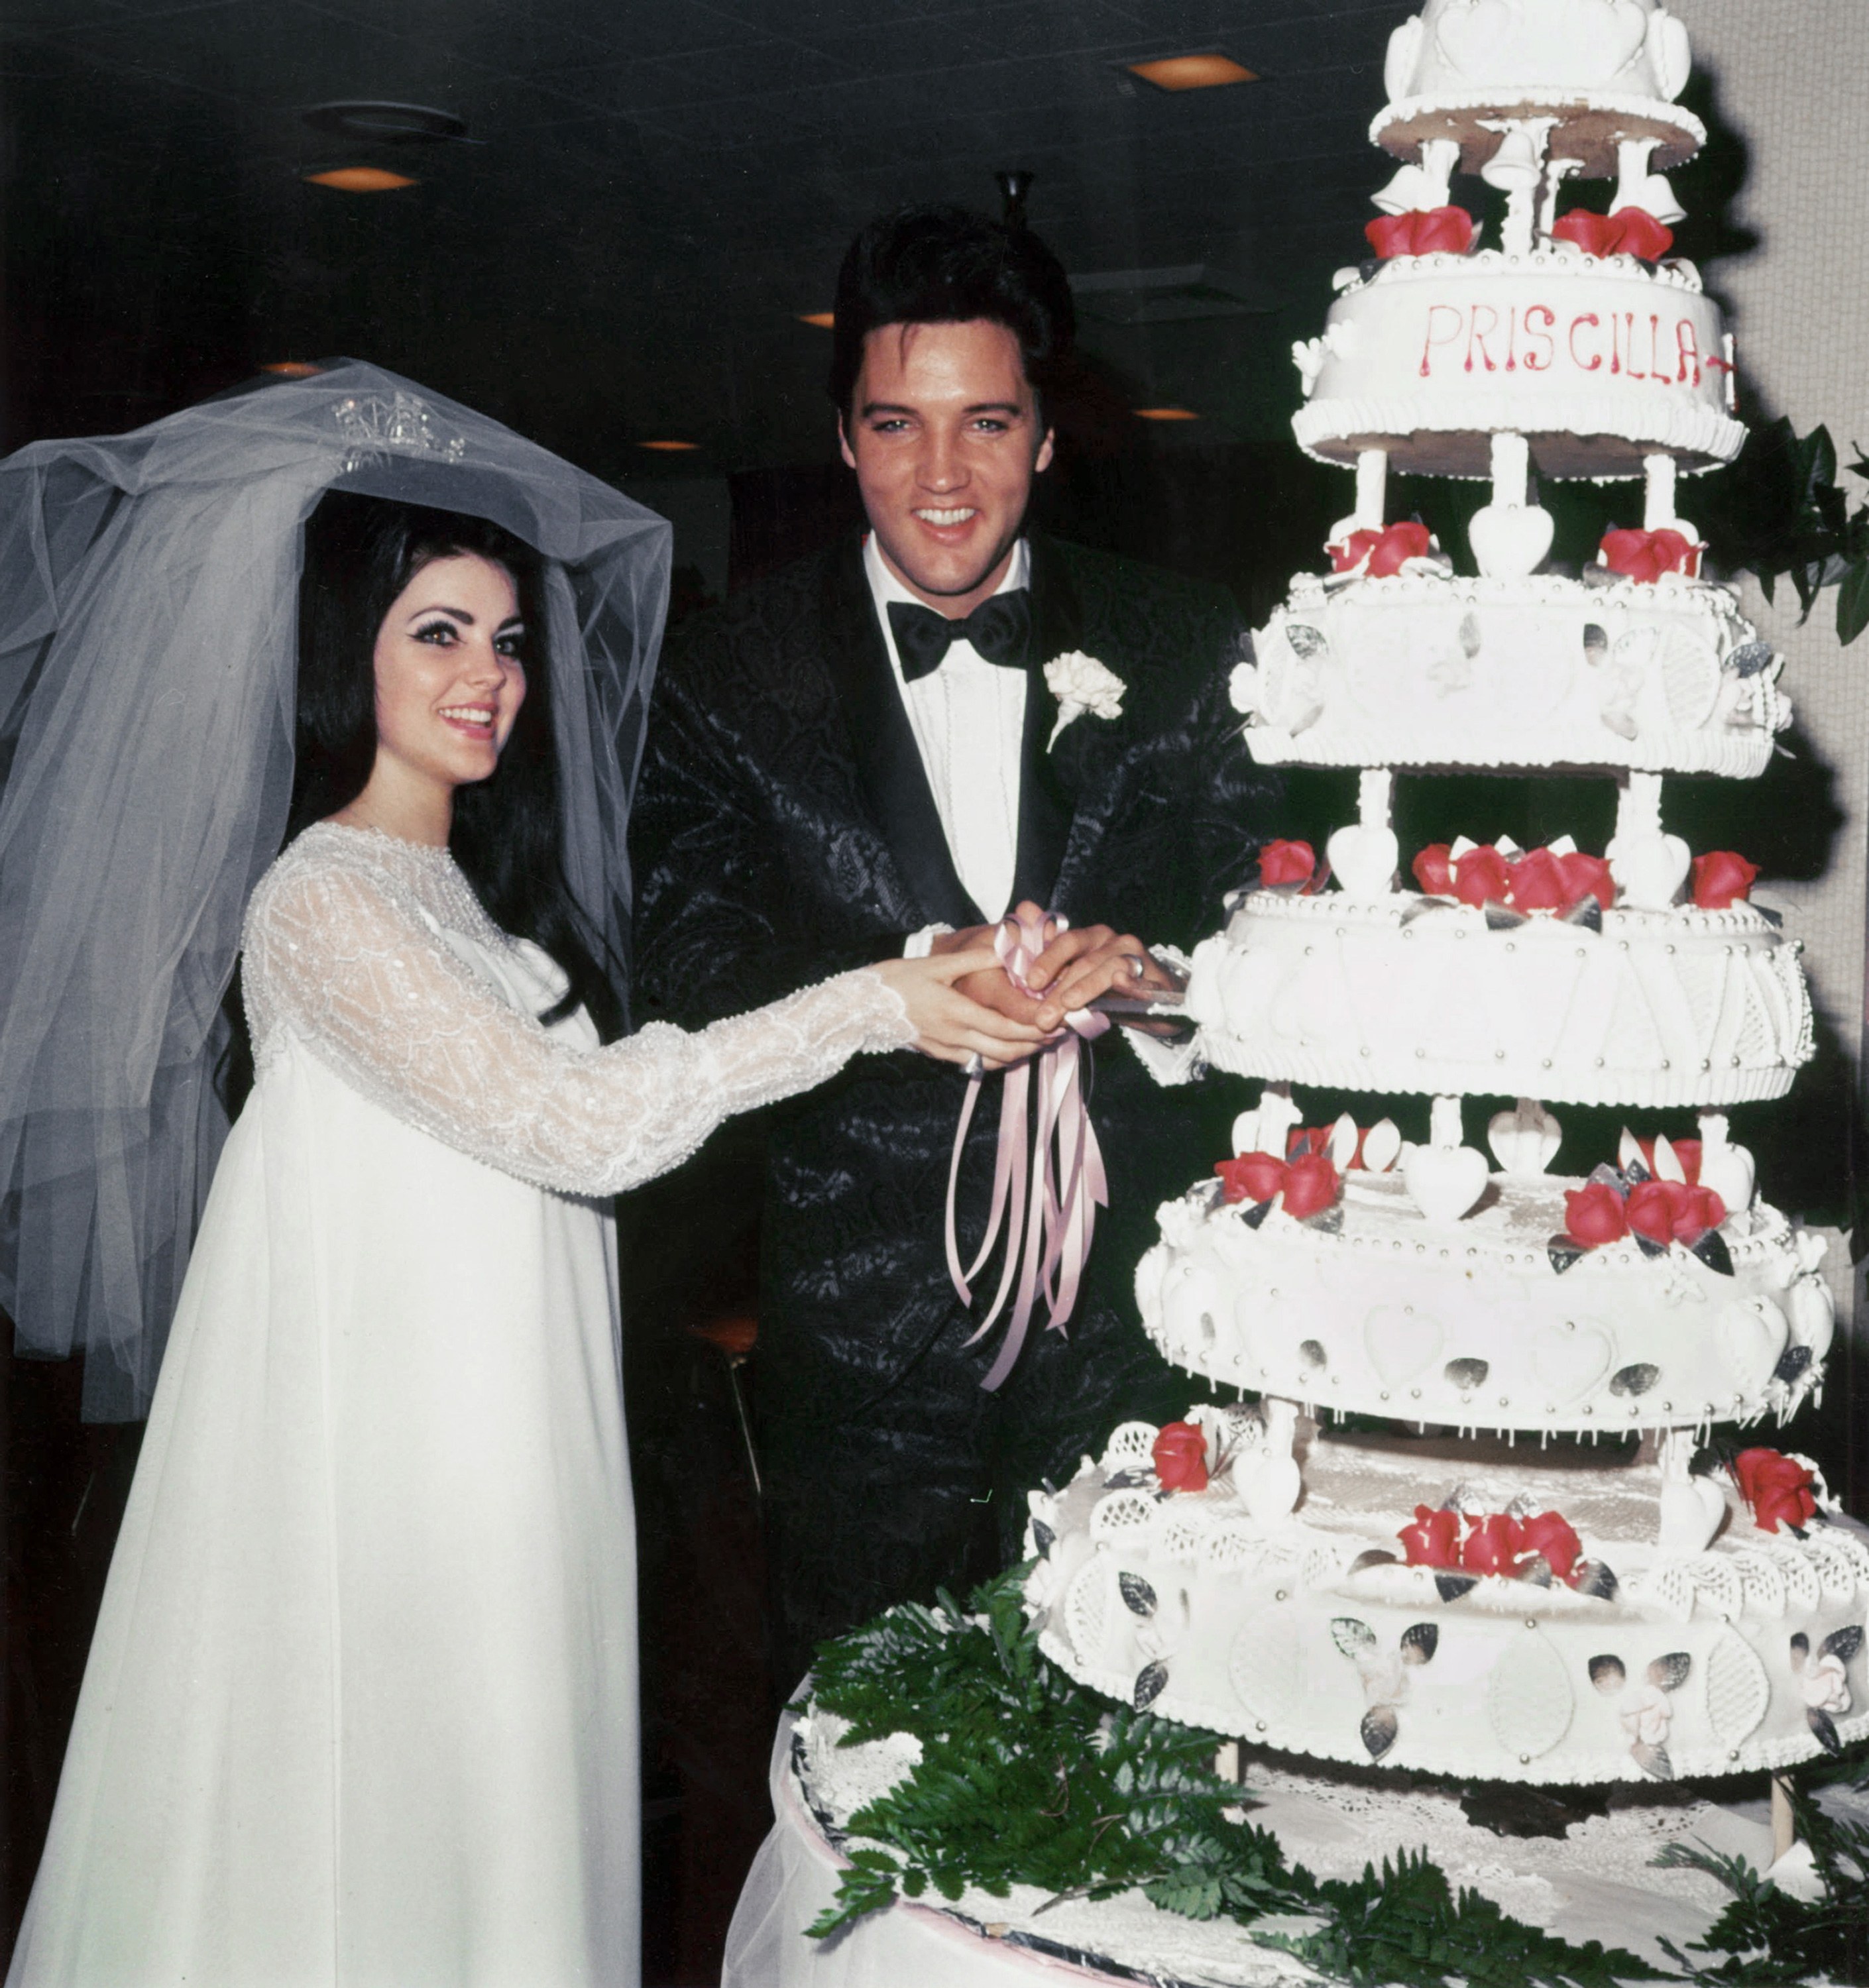 الفيس بريسلي وزوجته خلال تقطيع كعكه الزفاف  (1)